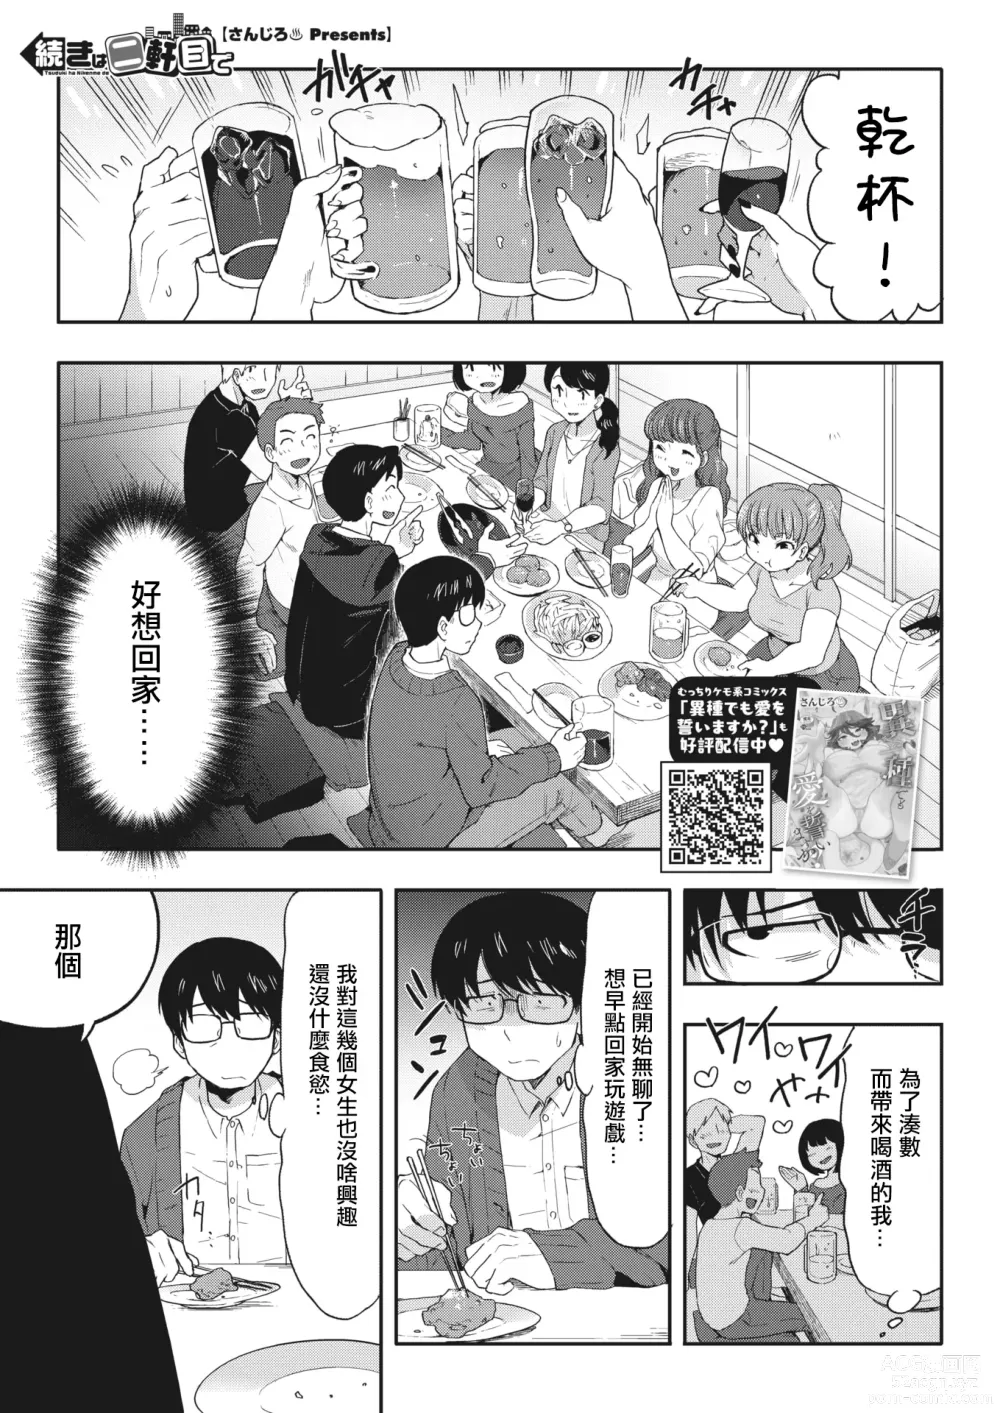 Page 2 of manga 接下來去第二家店